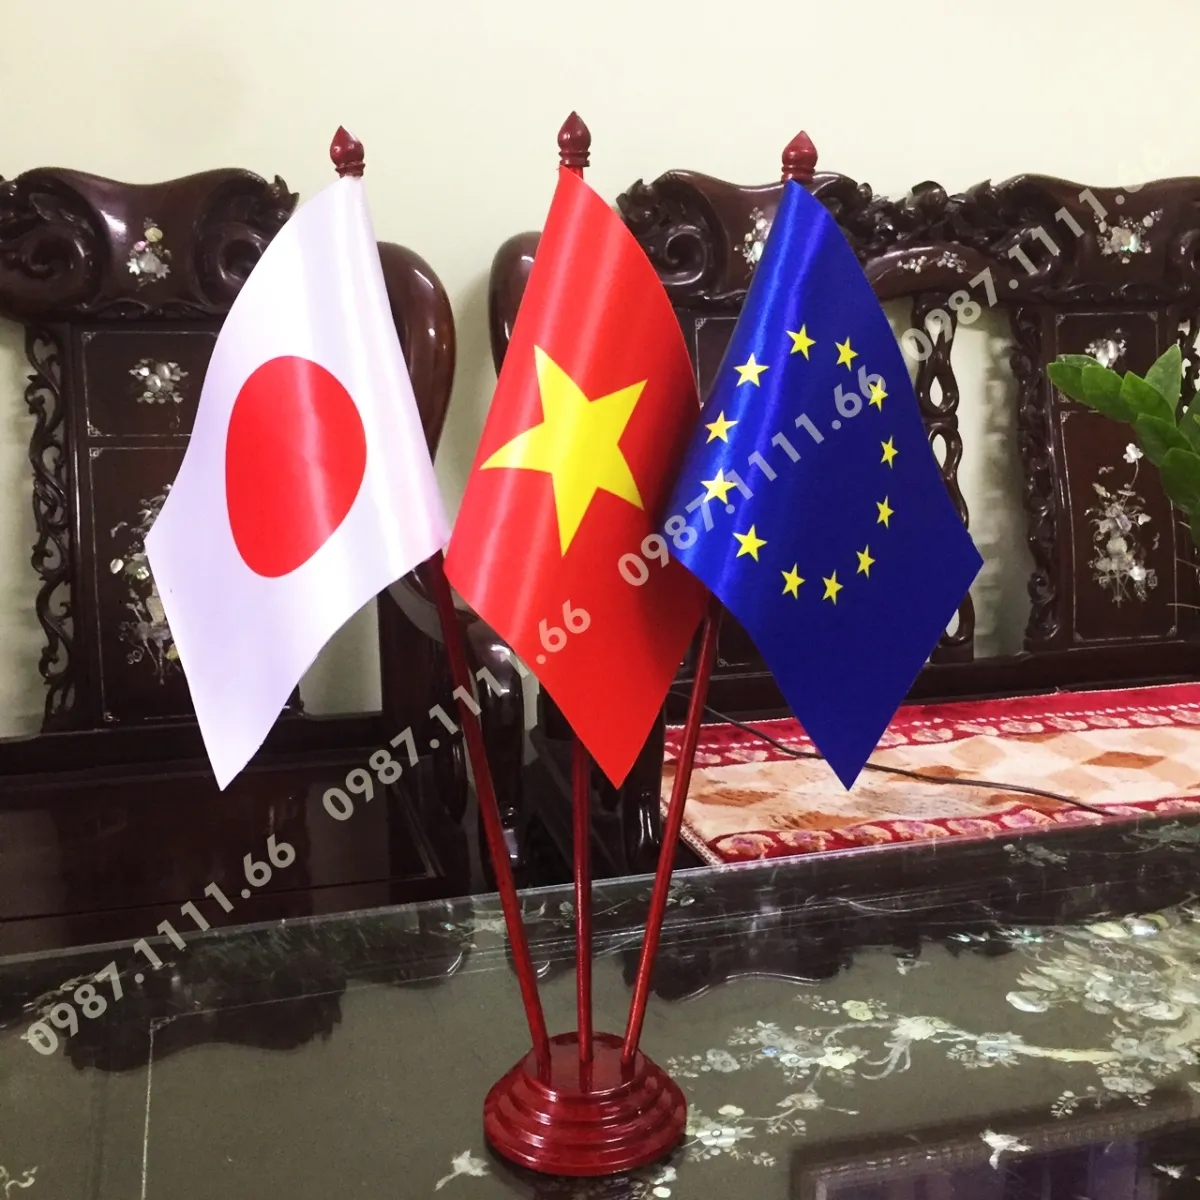 Muốn biết về tình hữu nghị giữa Việt Nam, Nhật Bản và Liên minh châu Âu? Hãy xem ngay hình ảnh của cờ để bàn kết hợp ba quốc gia này. Ý nghĩa chính của biểu tượng này là sự đoàn kết, hợp tác trong kinh tế, xã hội và đối ngoại. Hãy cảm nhận sức mạnh của sự đoàn kết và tích cực ủng hộ hợp tác giữa các nước.